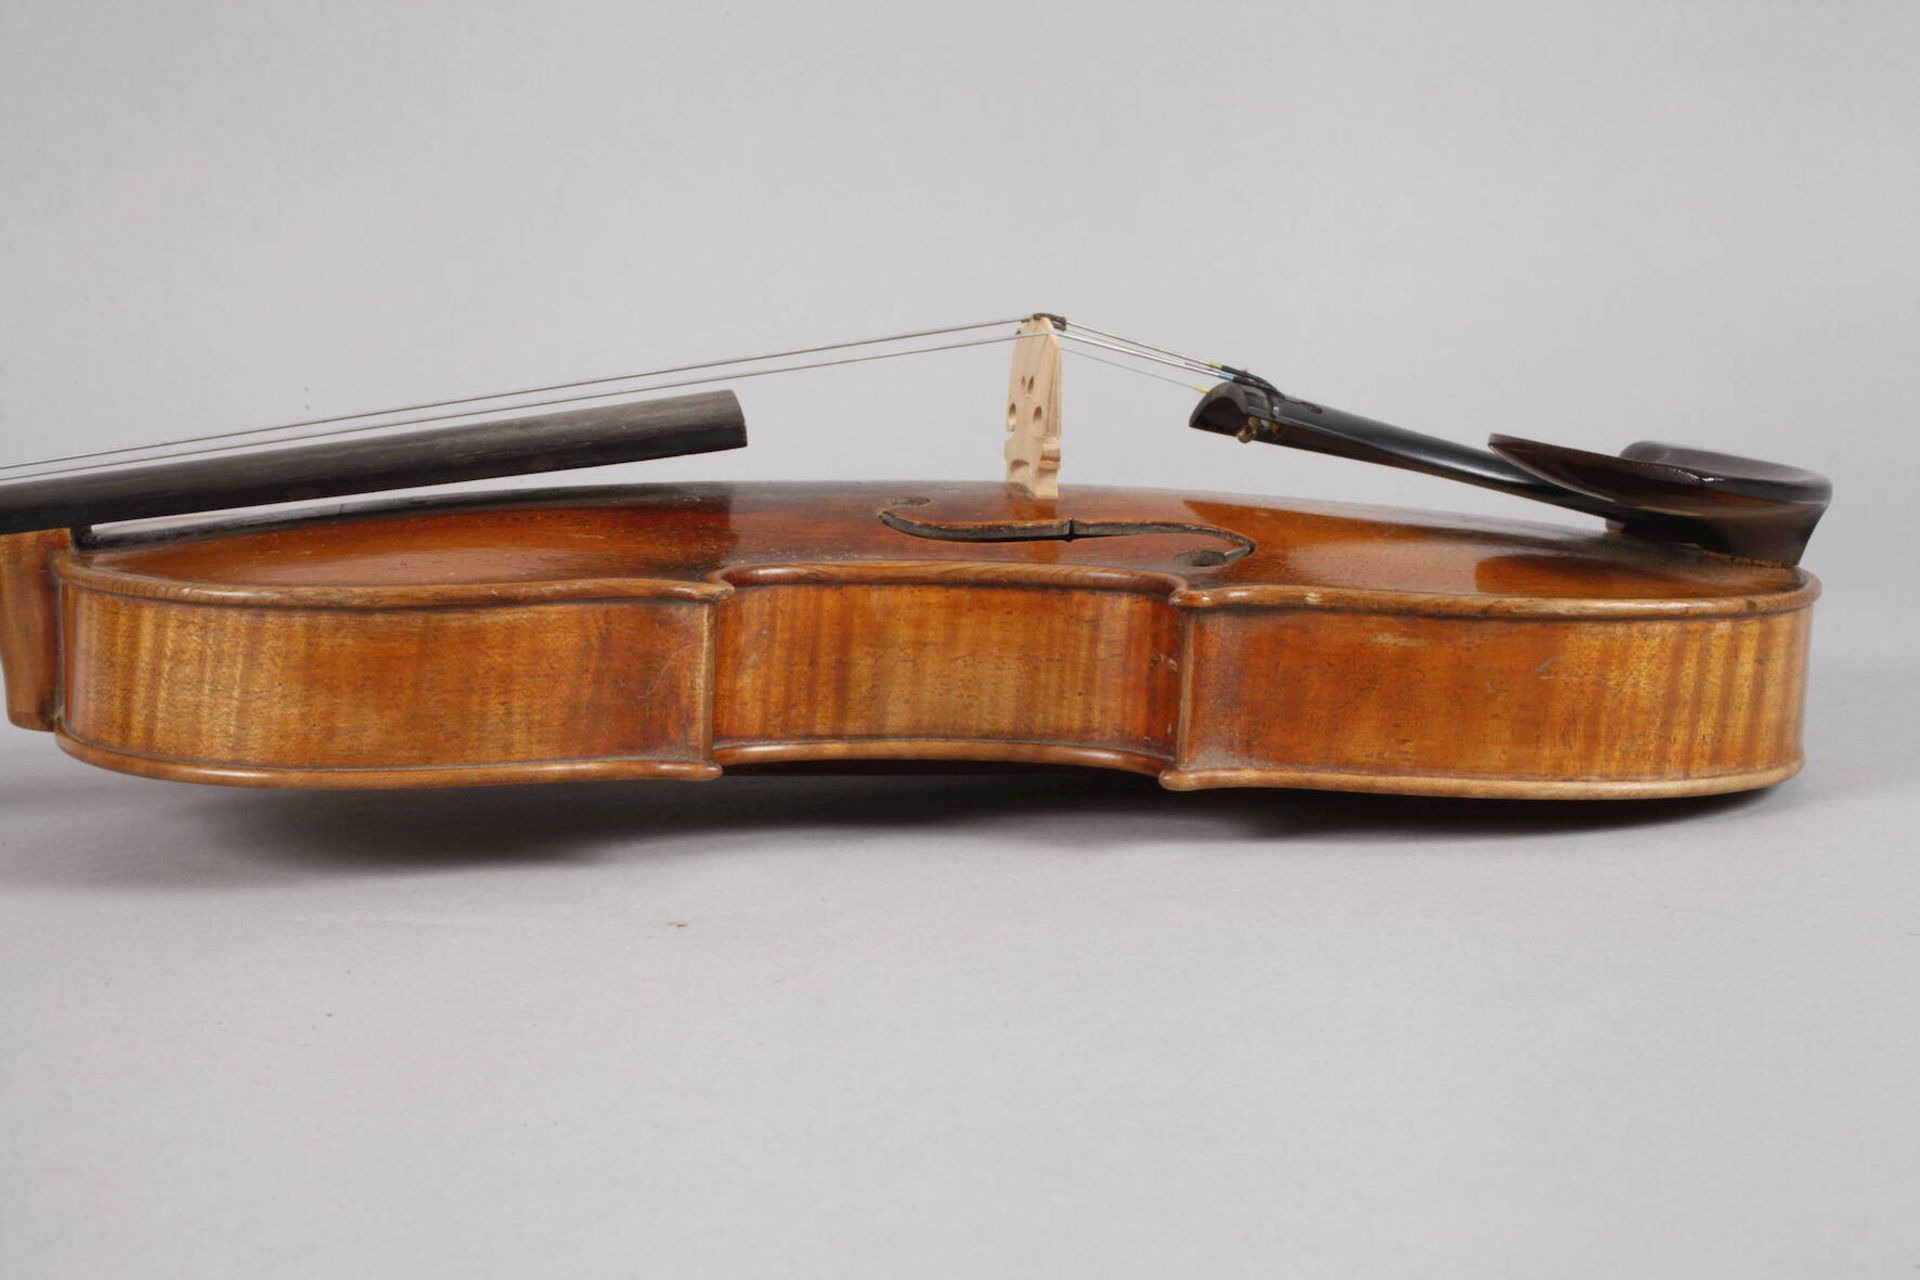 Violine auf Klebezettel bez. Ferd. A. Homoika Prage dat. 18... sowie ein weiterer unleserlicher - Bild 5 aus 6